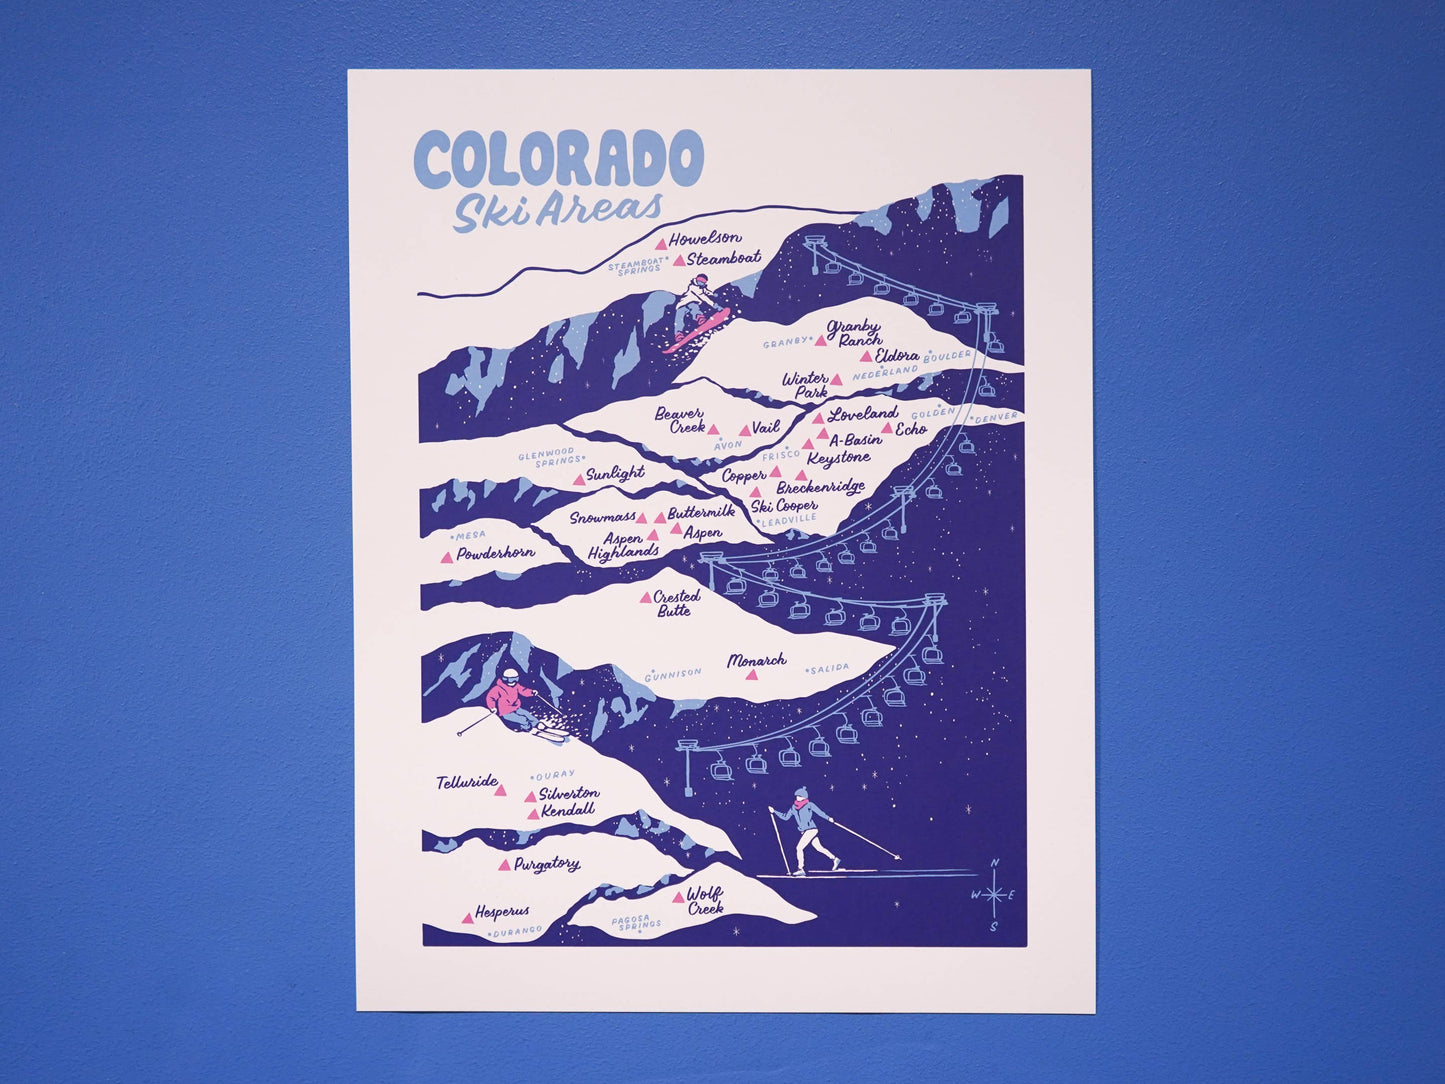 Colorado Ski Areas Map